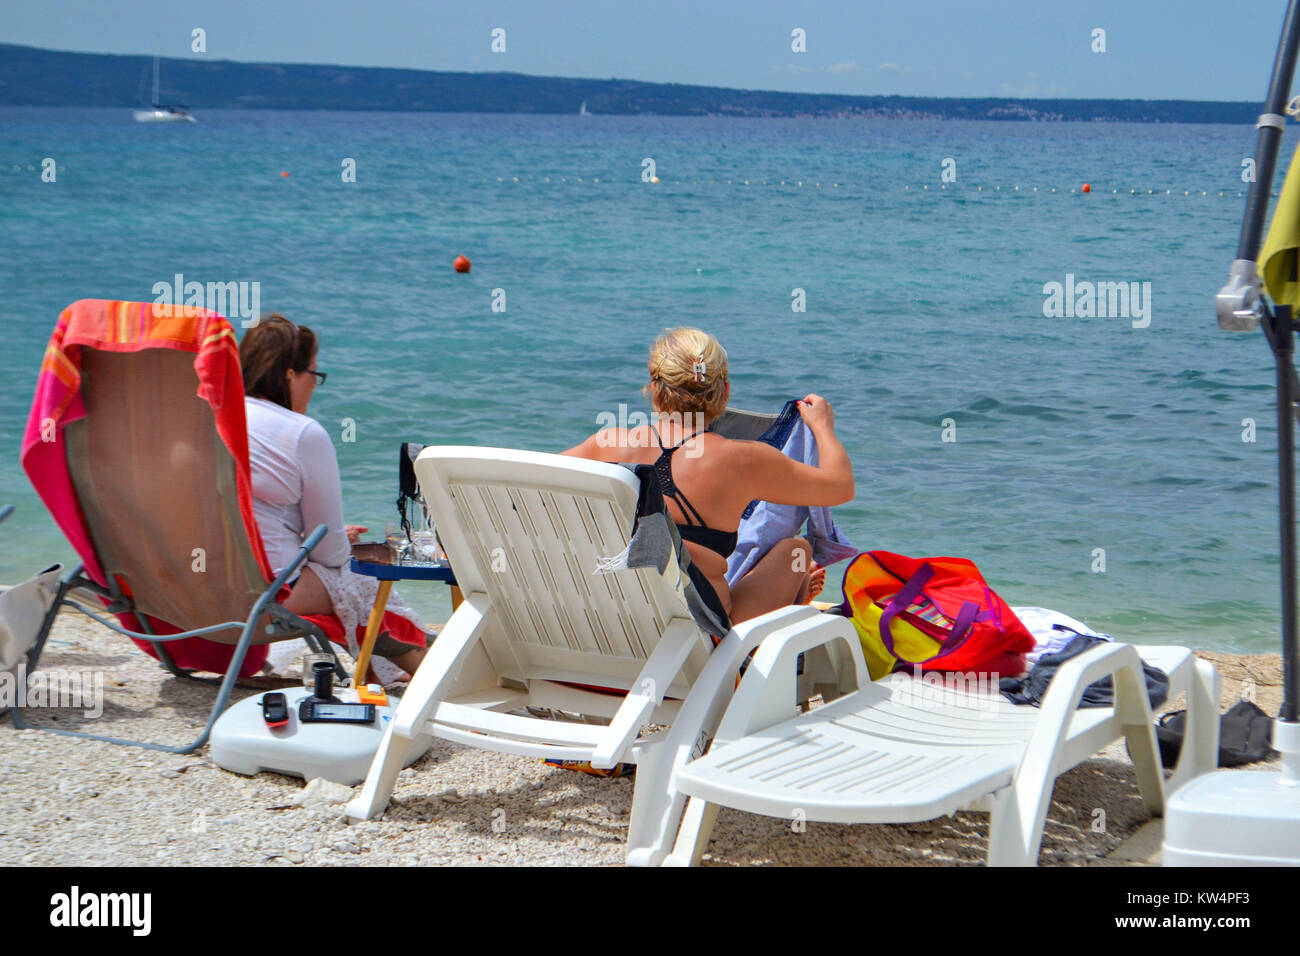 Imagen conceptual de vacaciones de verano/ disfrutando en la playa. Foto de stock